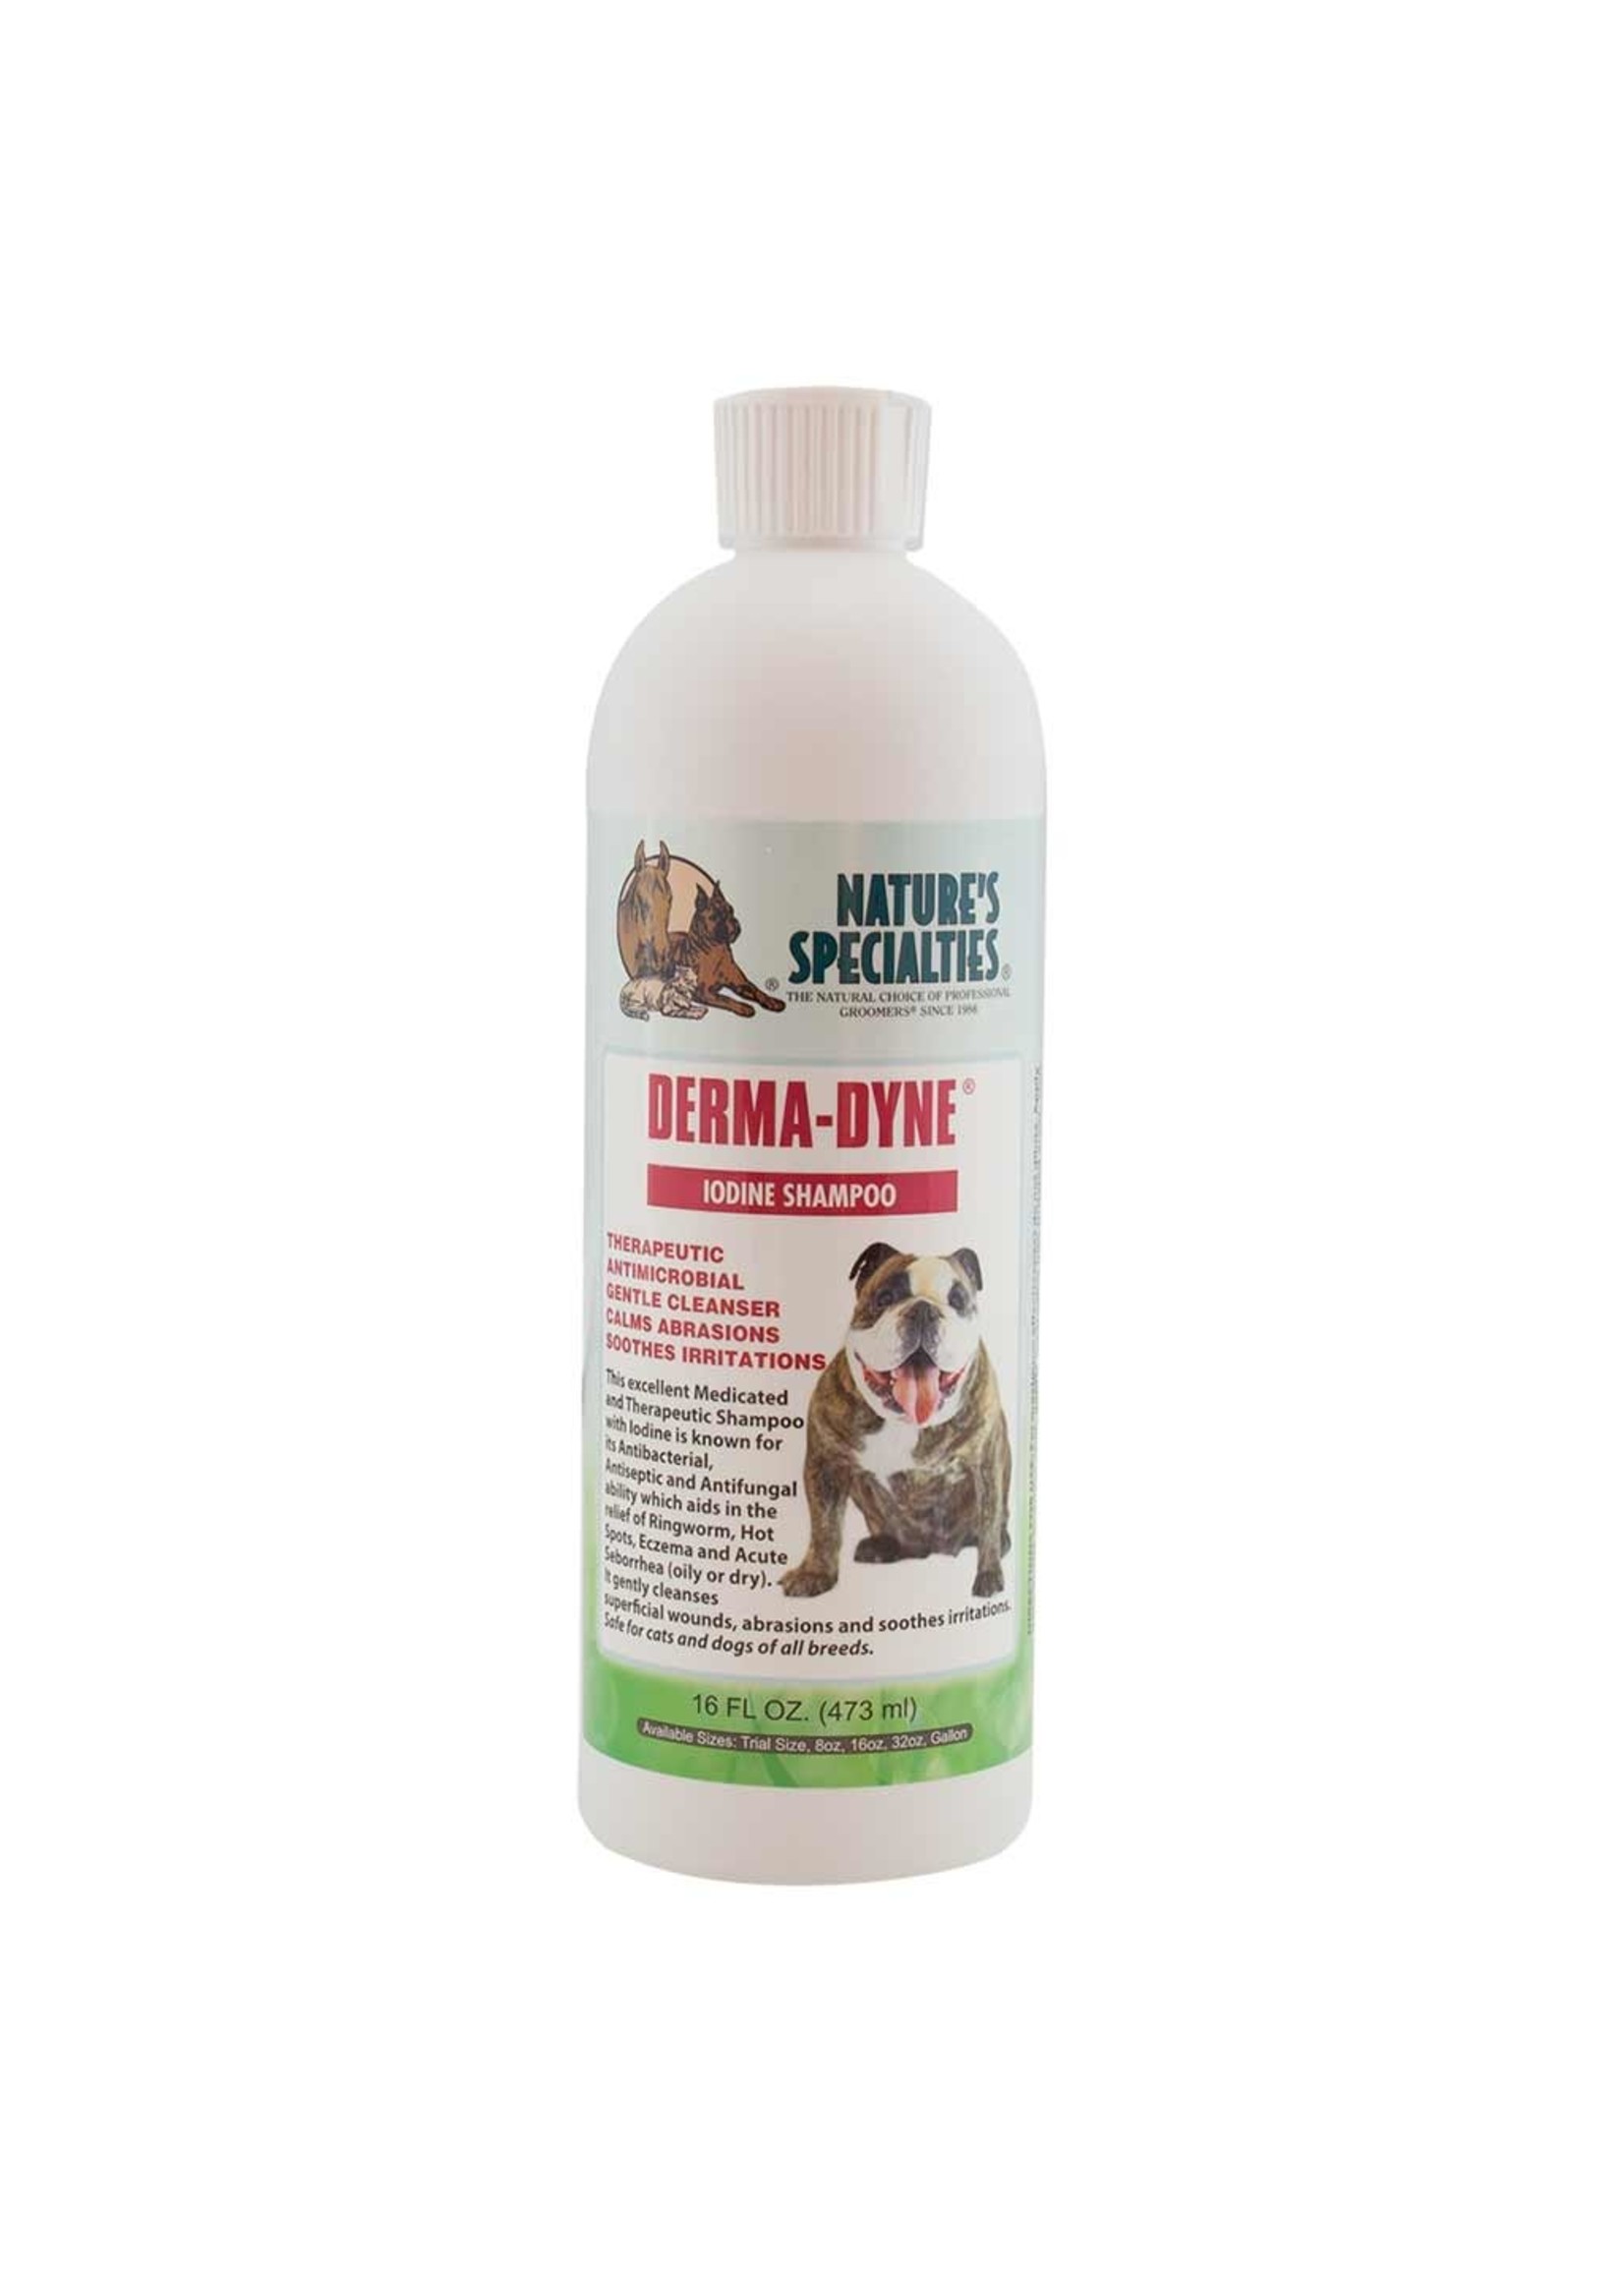 Nature's Specialties Nature's Specialties Derma- Dyne Iodine Shampoo 16fl oz